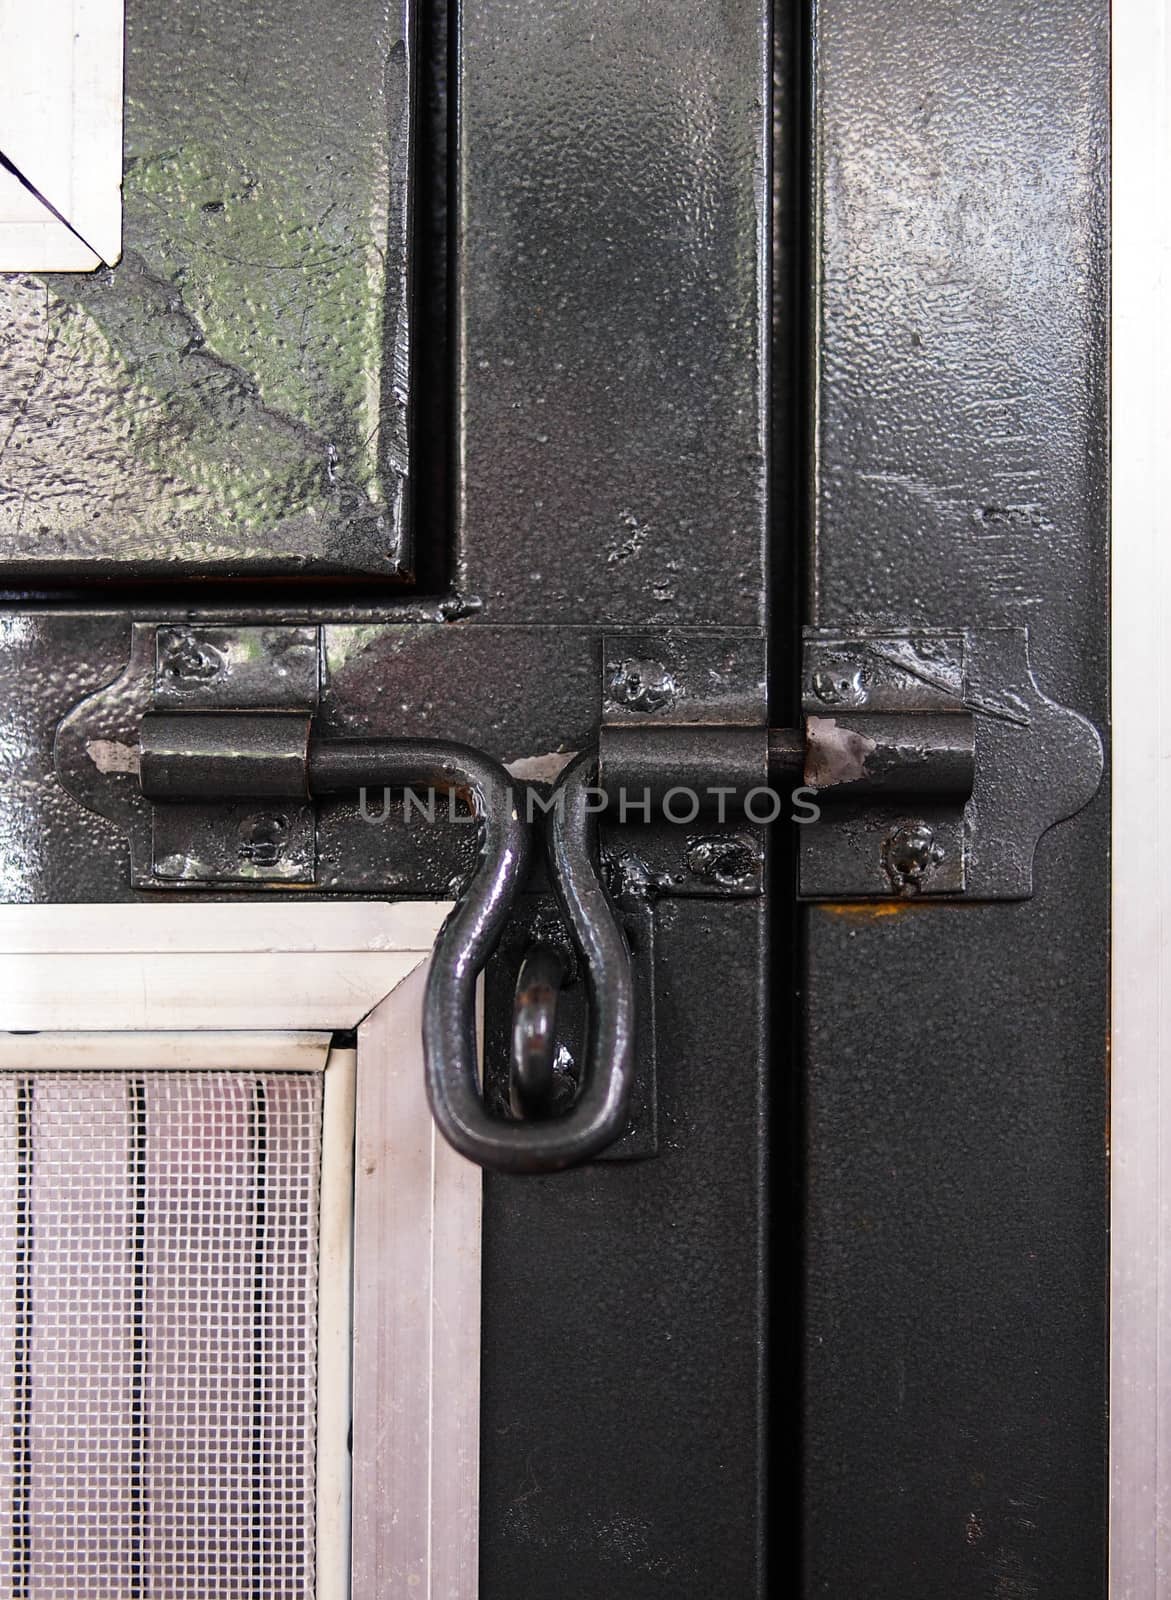 To lock the door